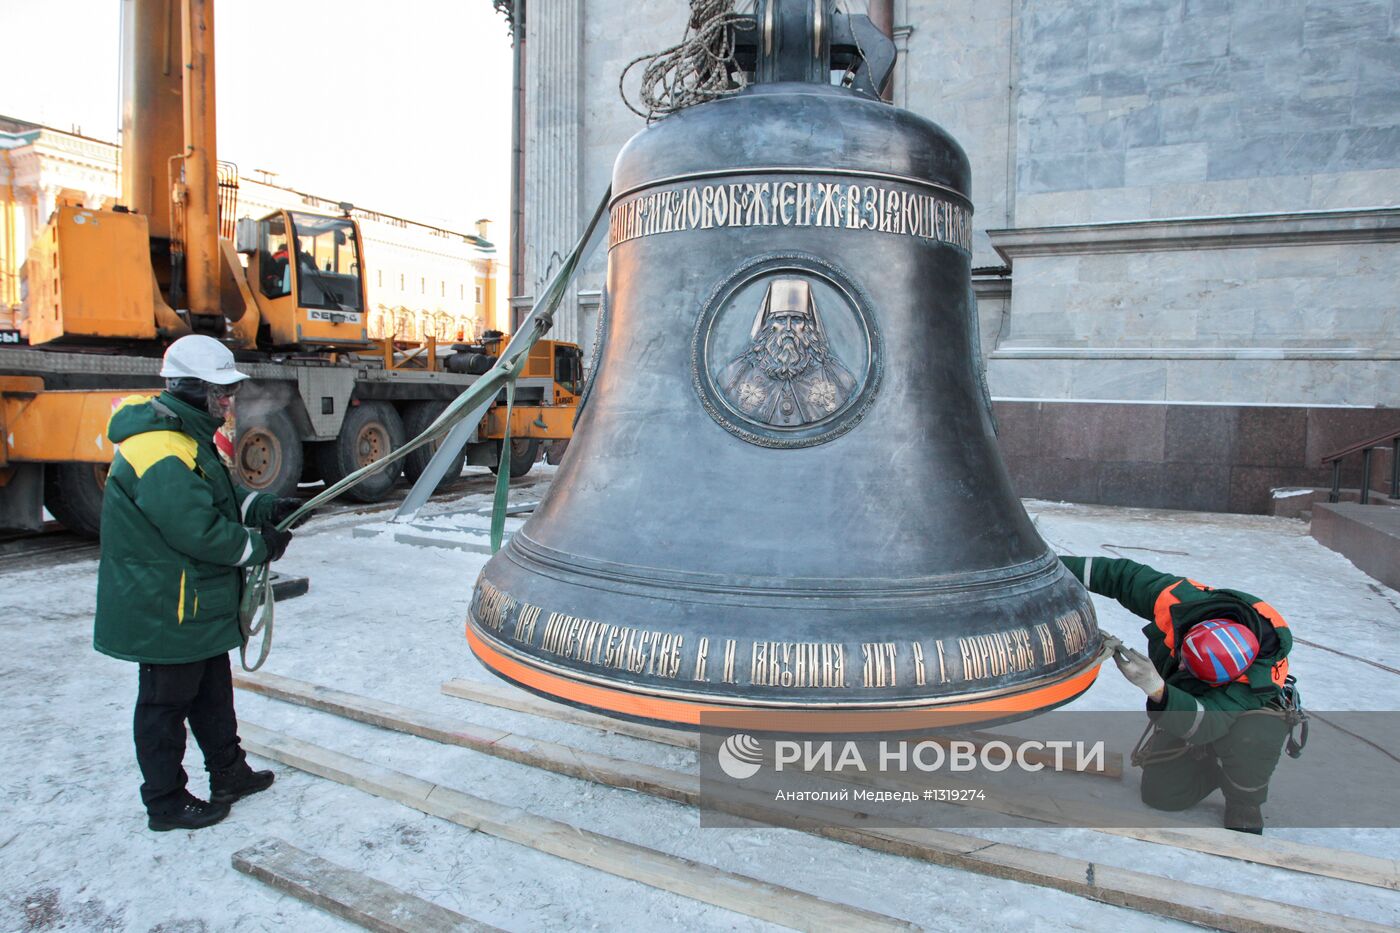 Новые колокола Исаакиевского собора в Санкт-Петербурге